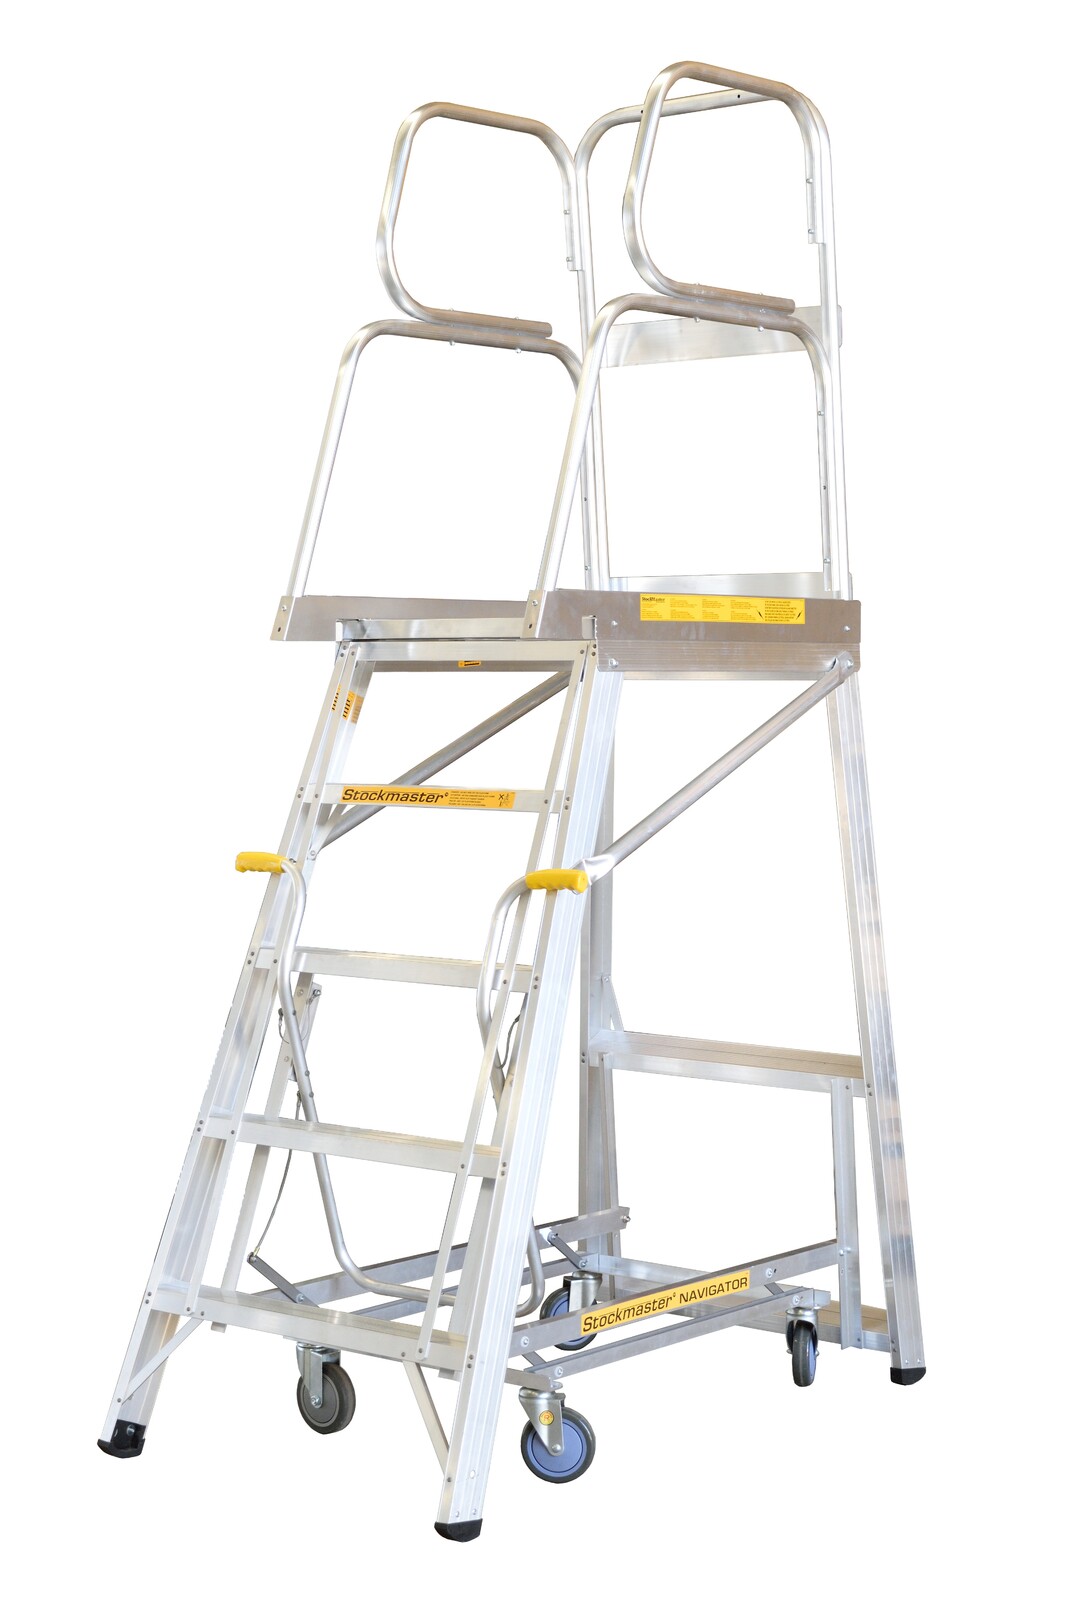 Stockmaster 150kg Rated Mobile Work Platform Ladder Navigator - 3.4m